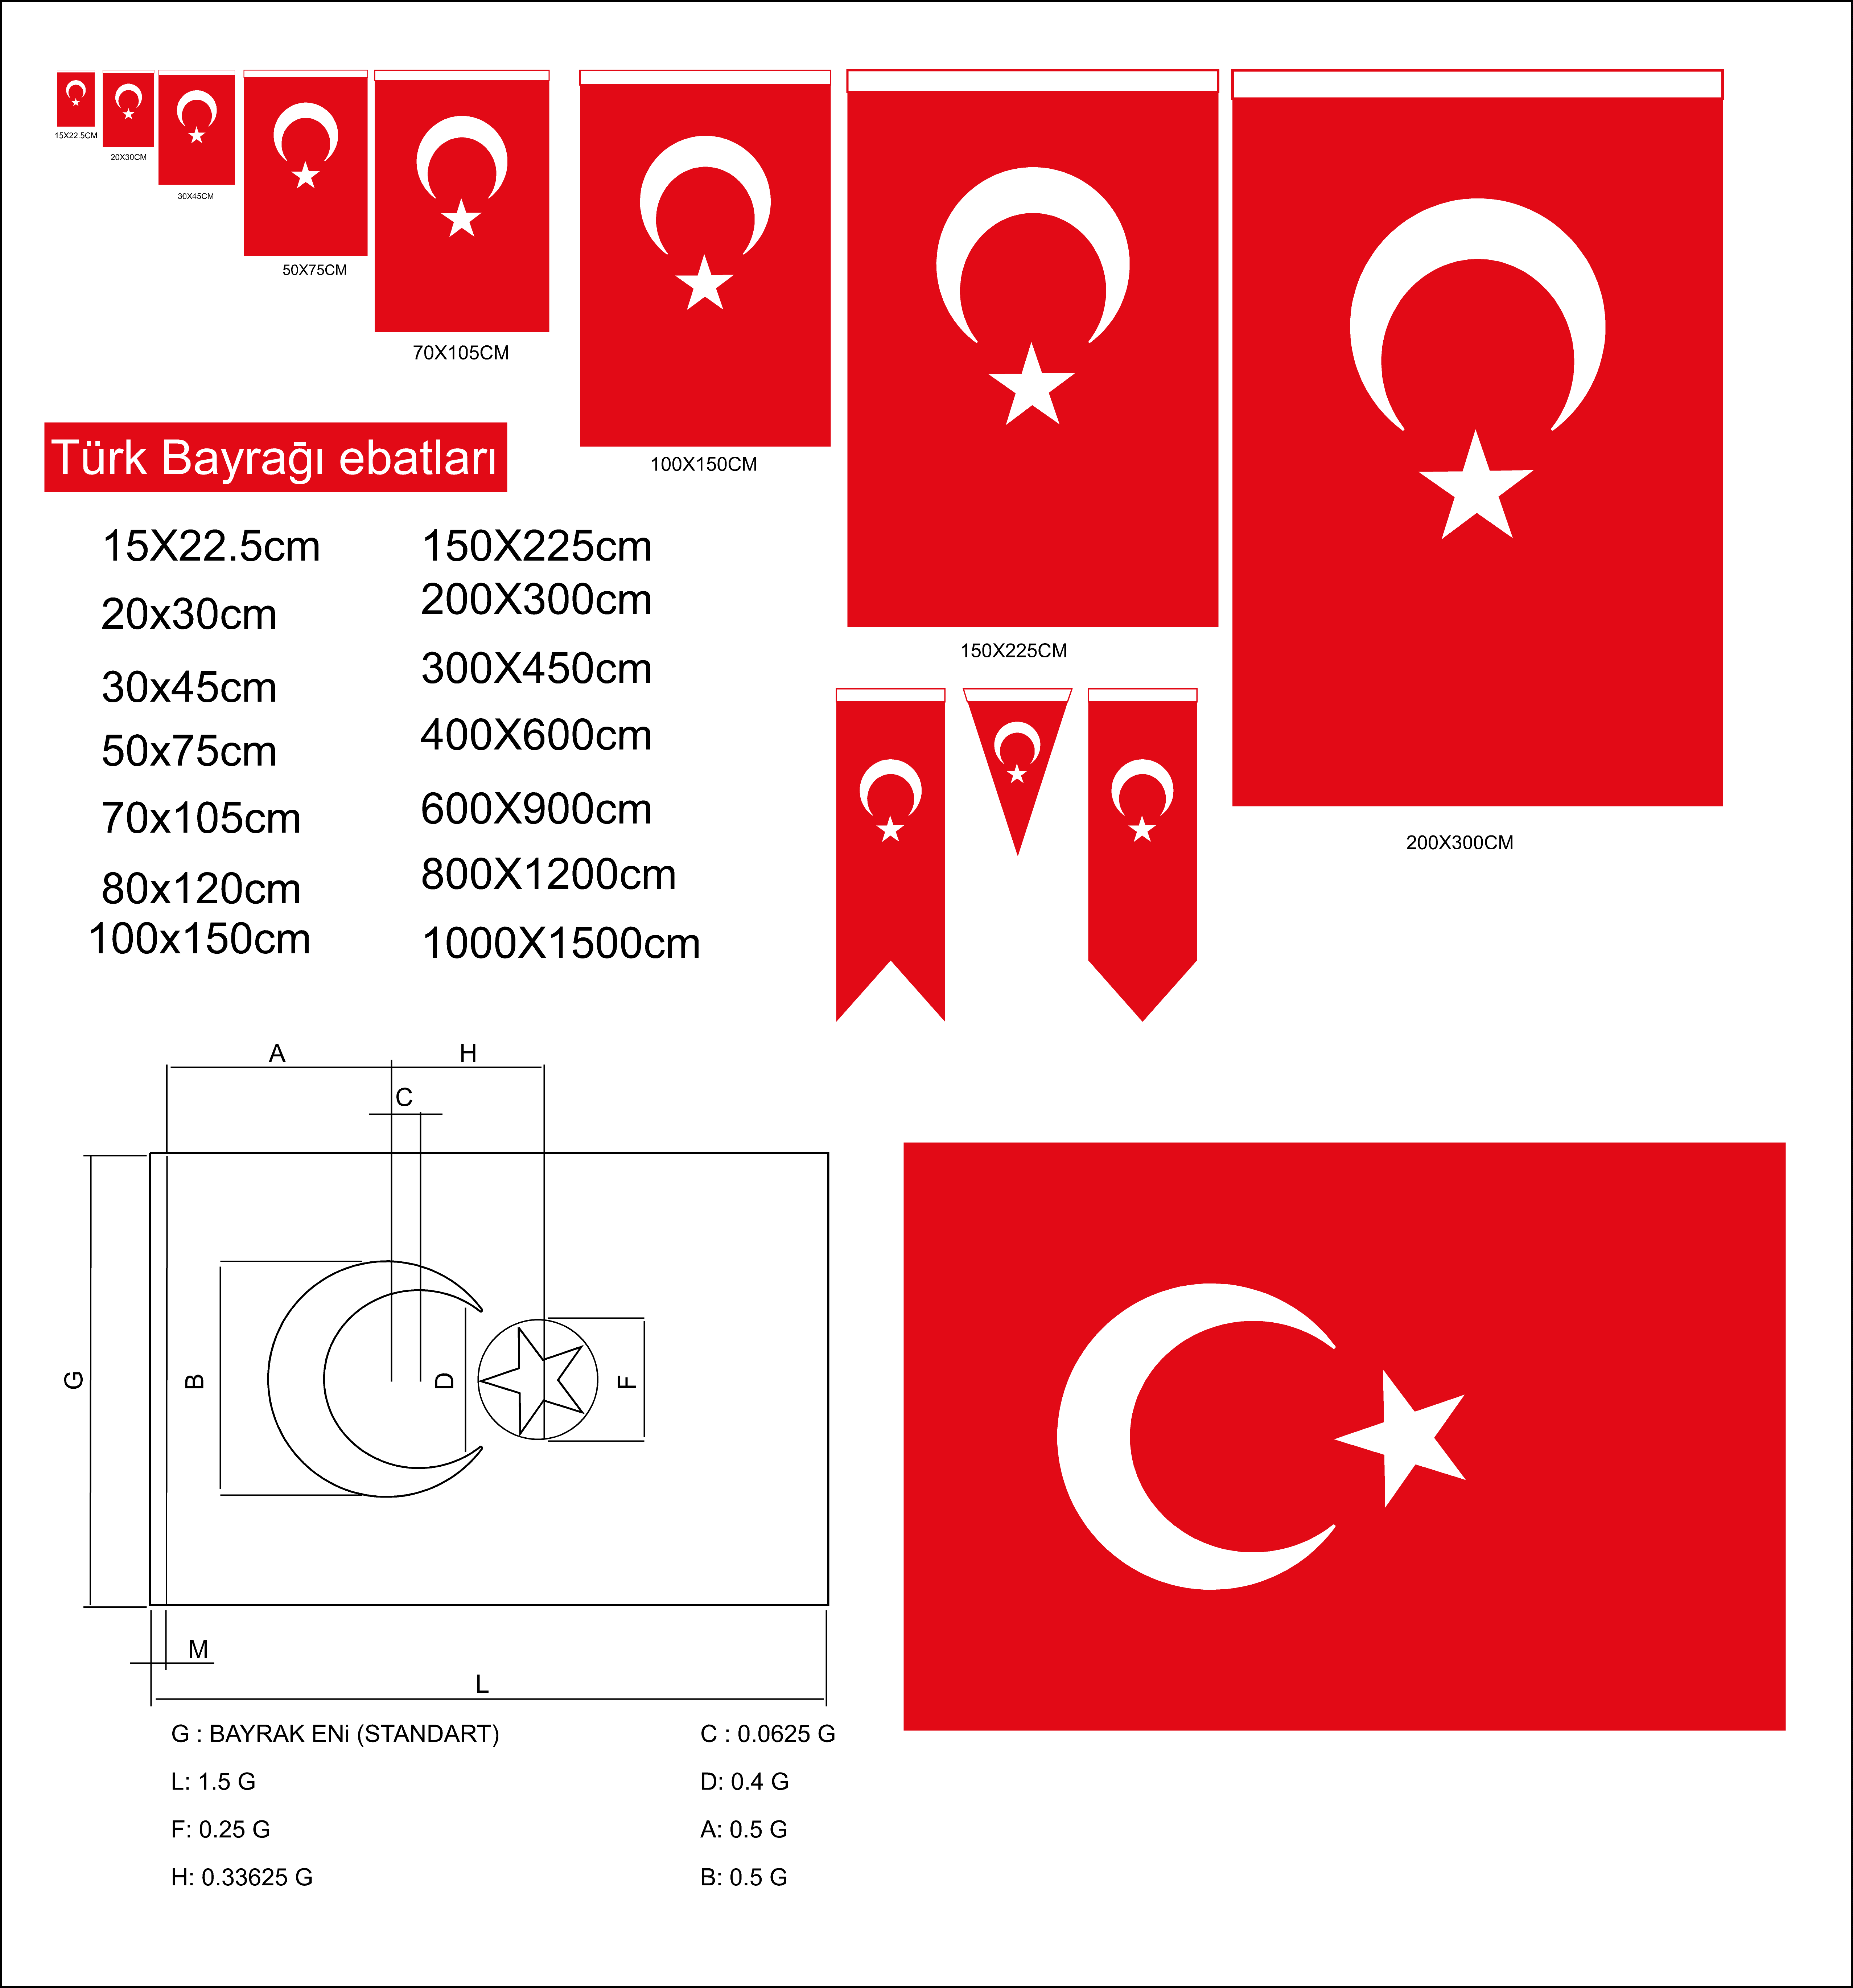 Türk Bayrağı Ölçüleri ve Fiyatları - Plan Bayrak